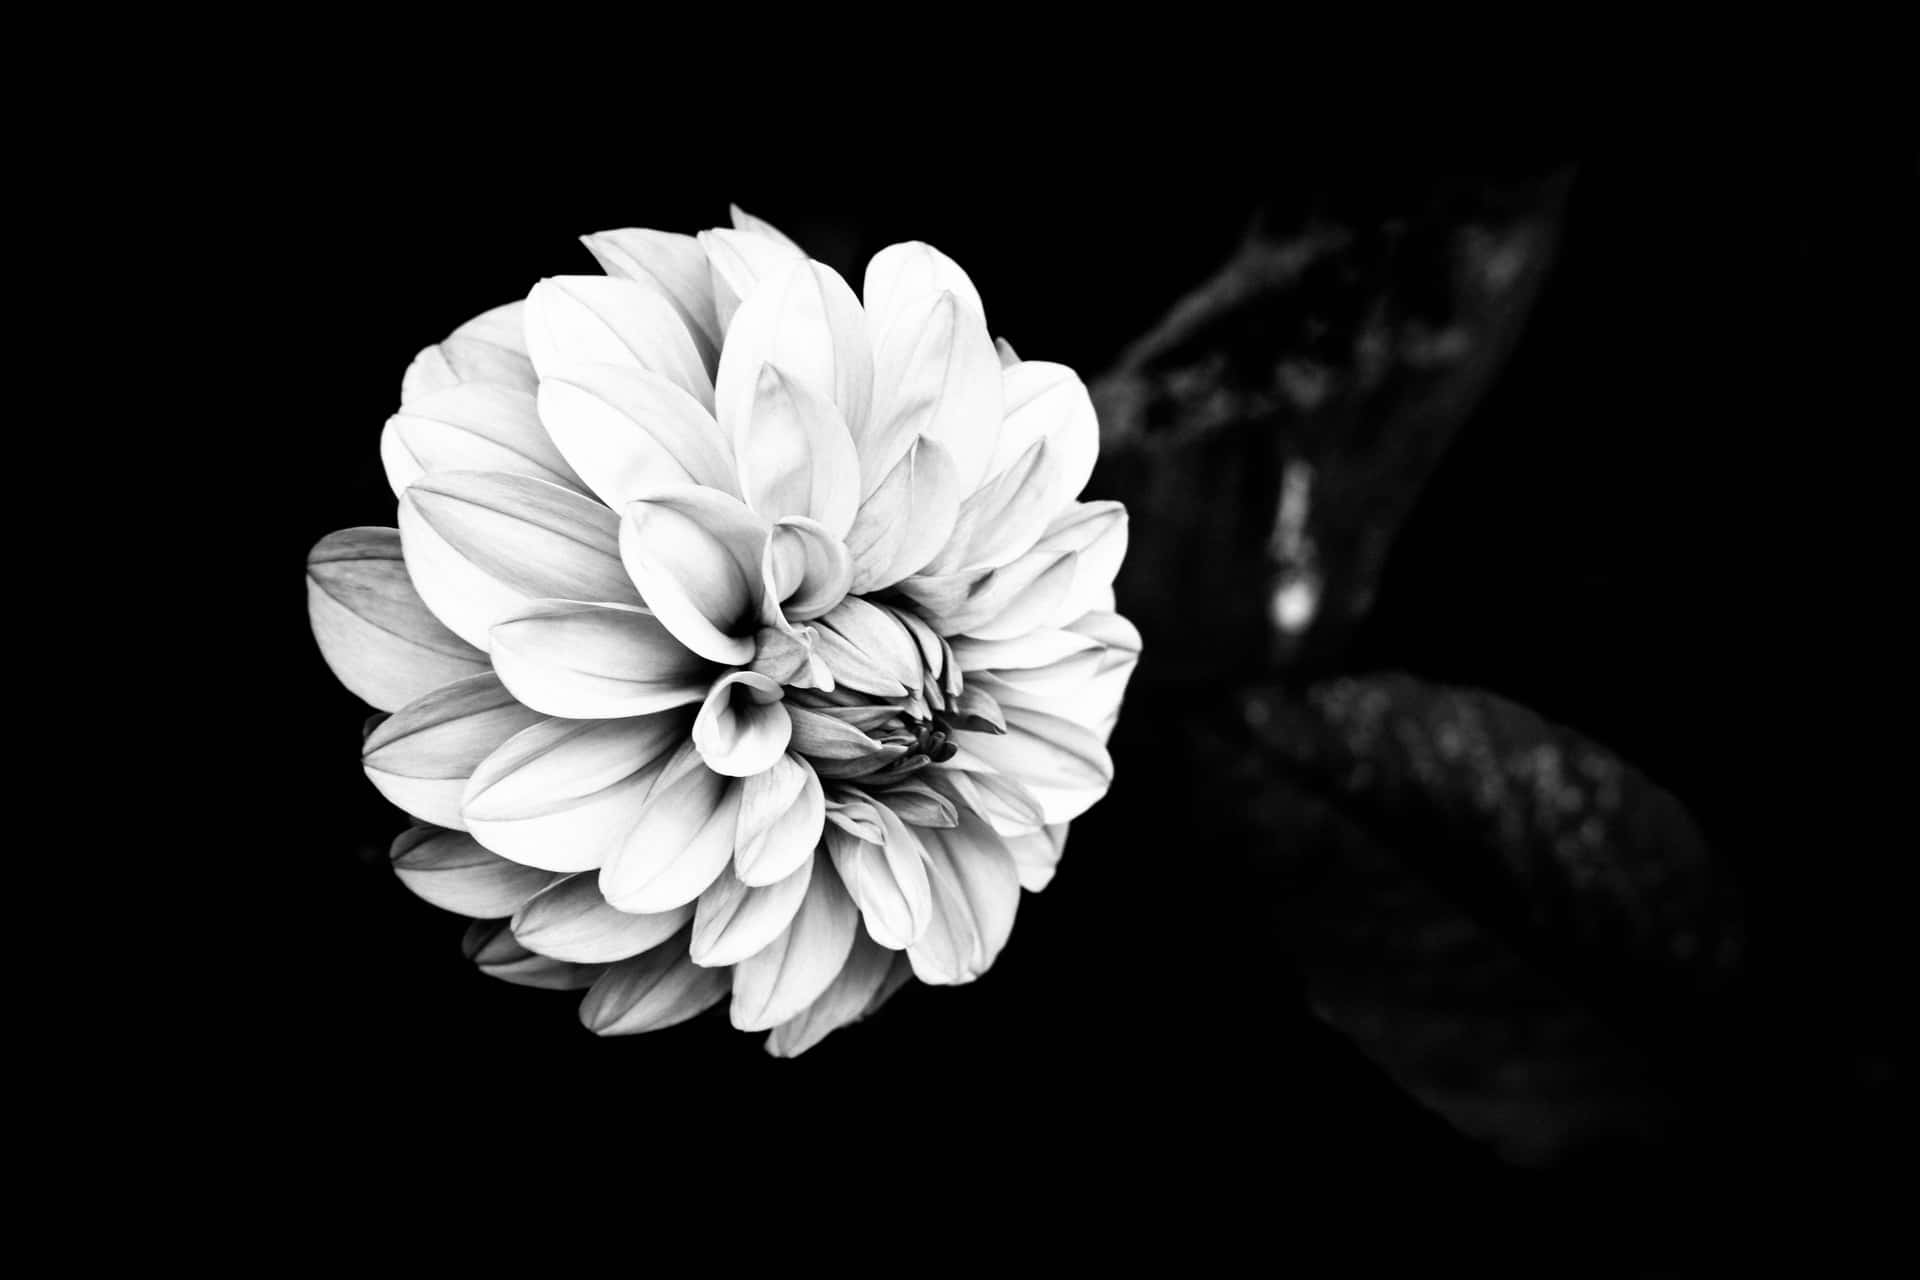 Eineatemberaubende Schwarz-weiße Blume.